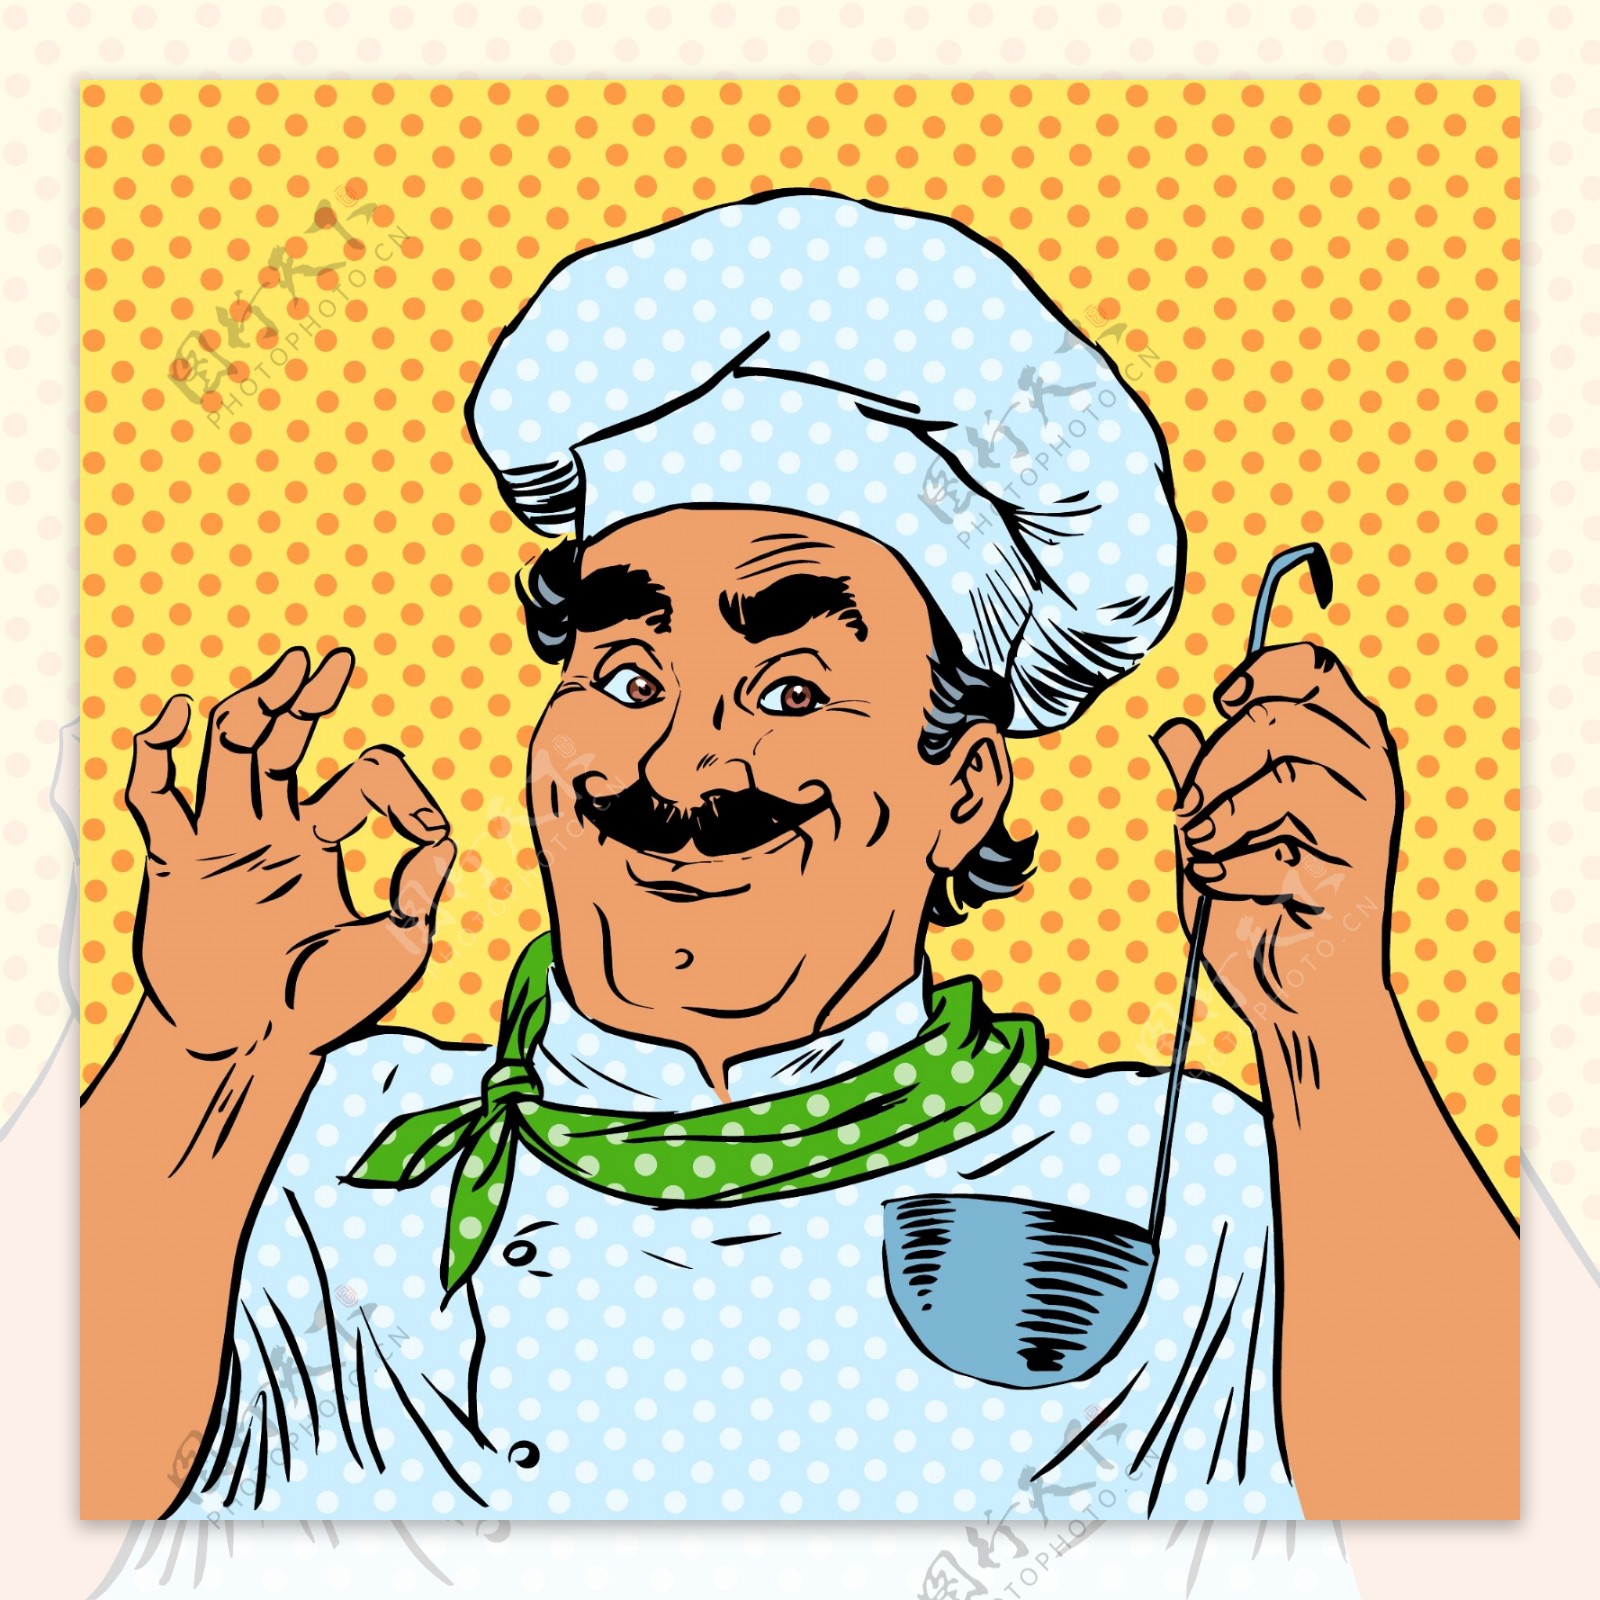 厨师欧美卡通海报漫画风格人物矢量素材